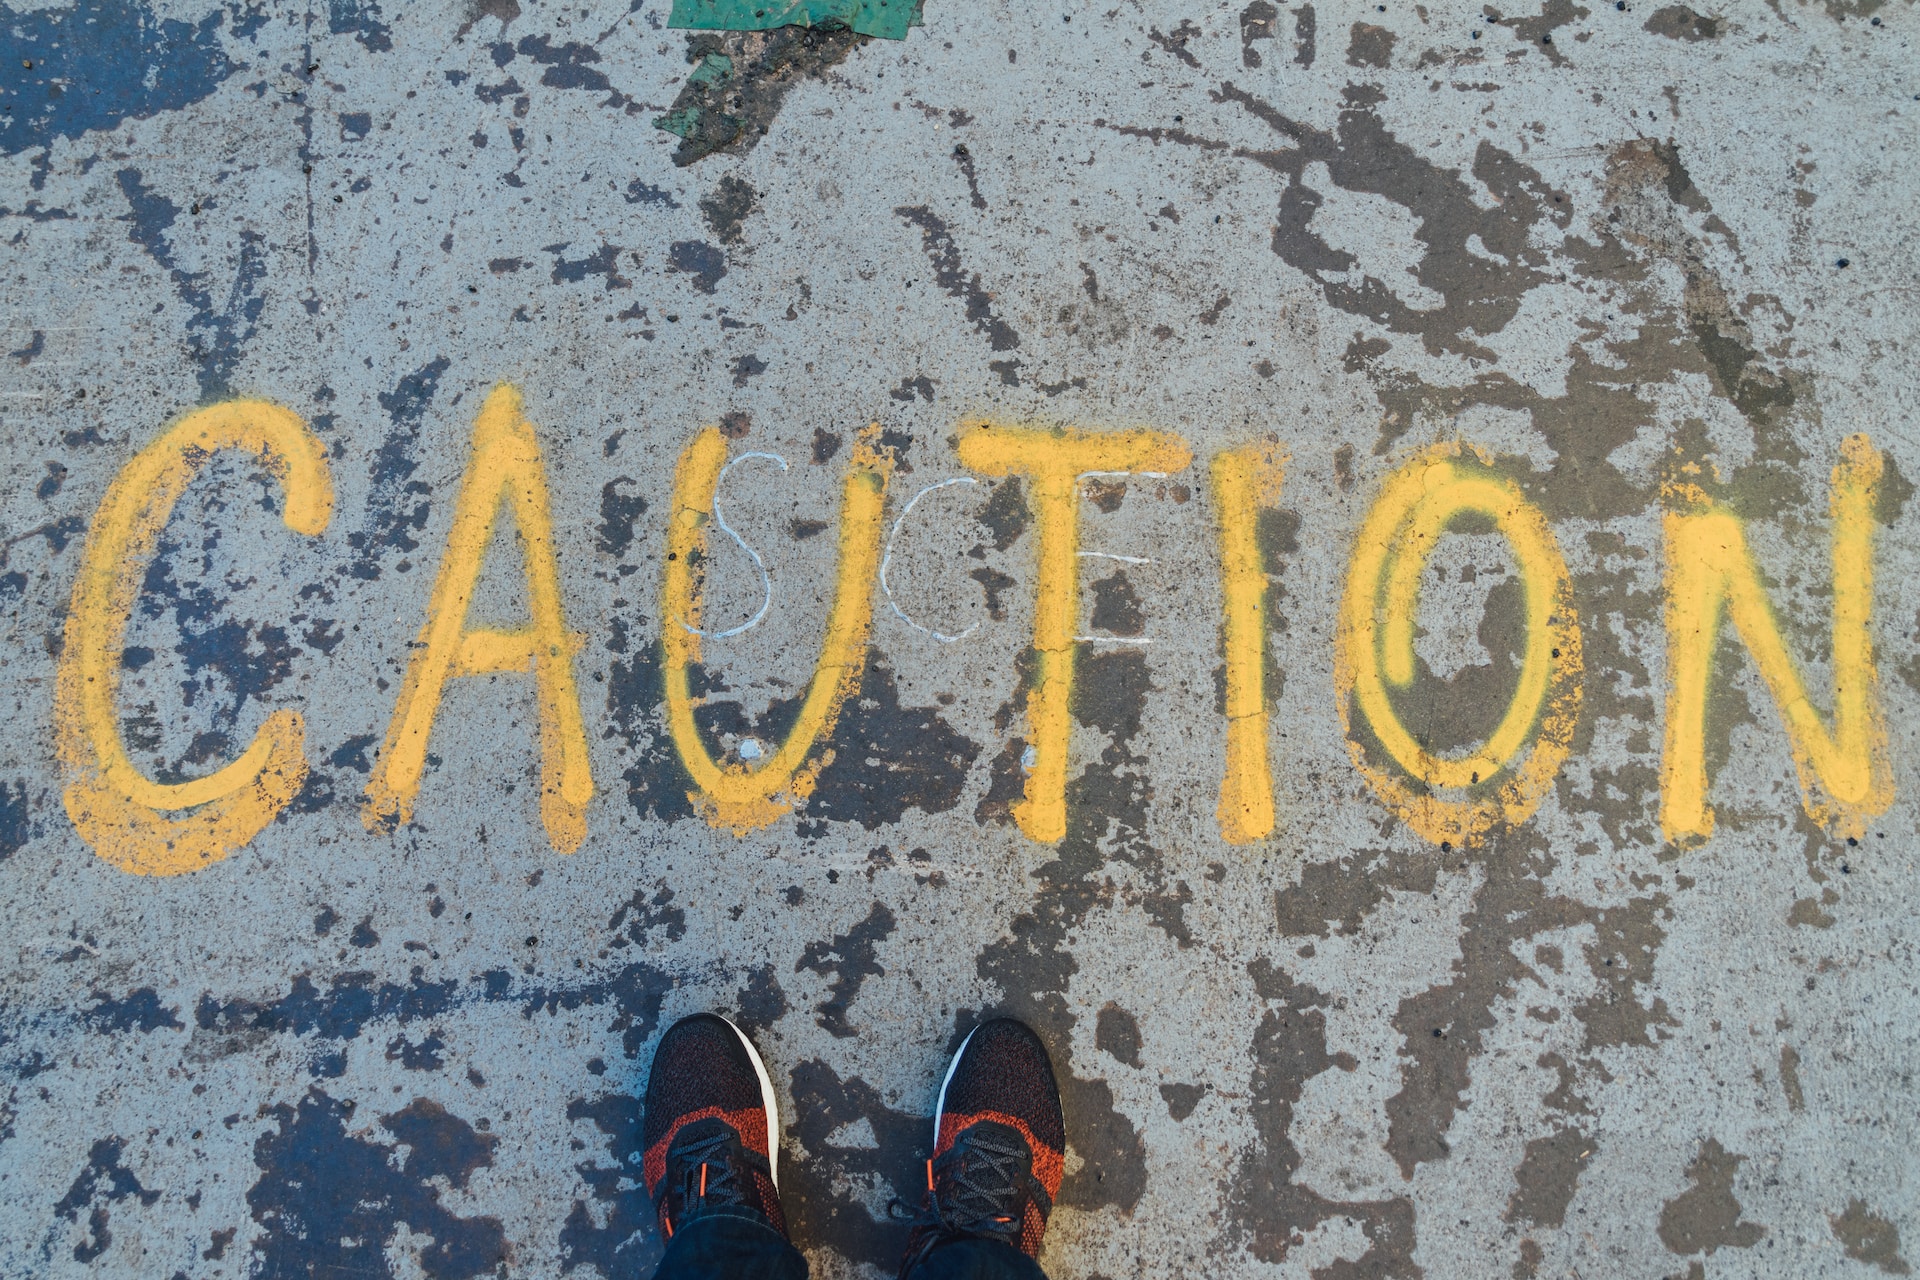 The word "caution" written on the ground in dark yellow chalk.